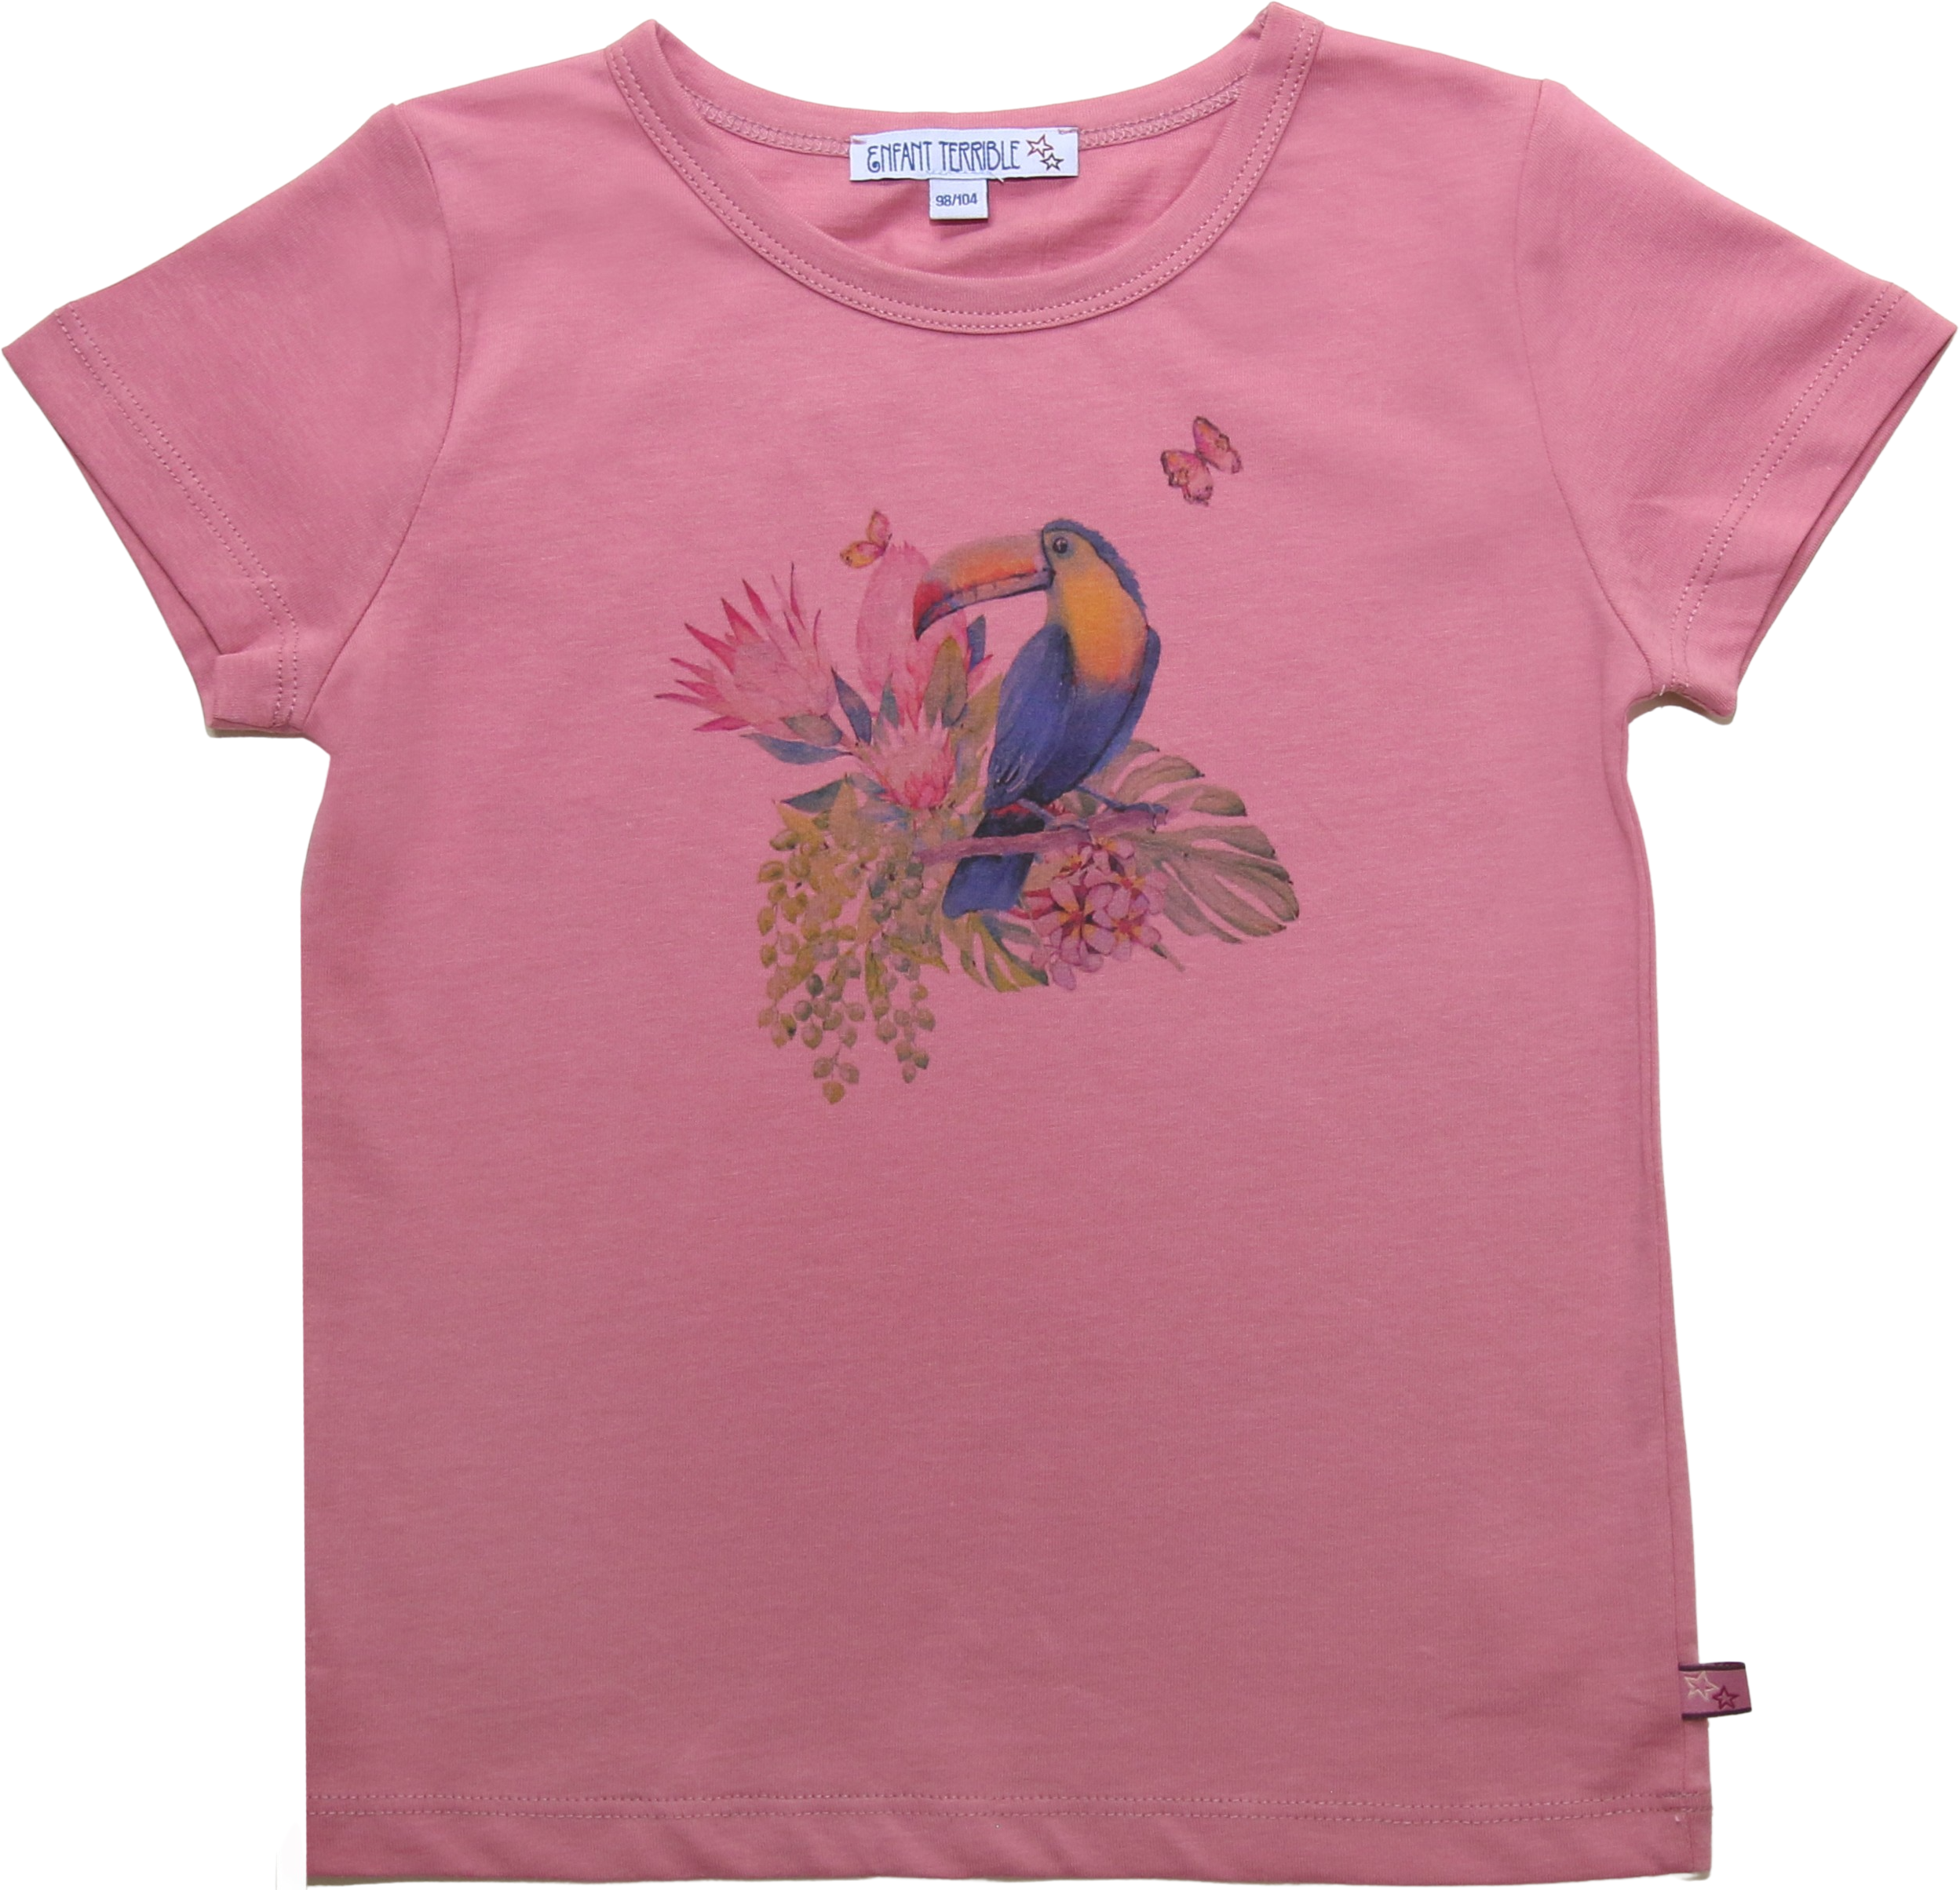 Kinder-Shirt mit Tucan-Aufdruck rosé